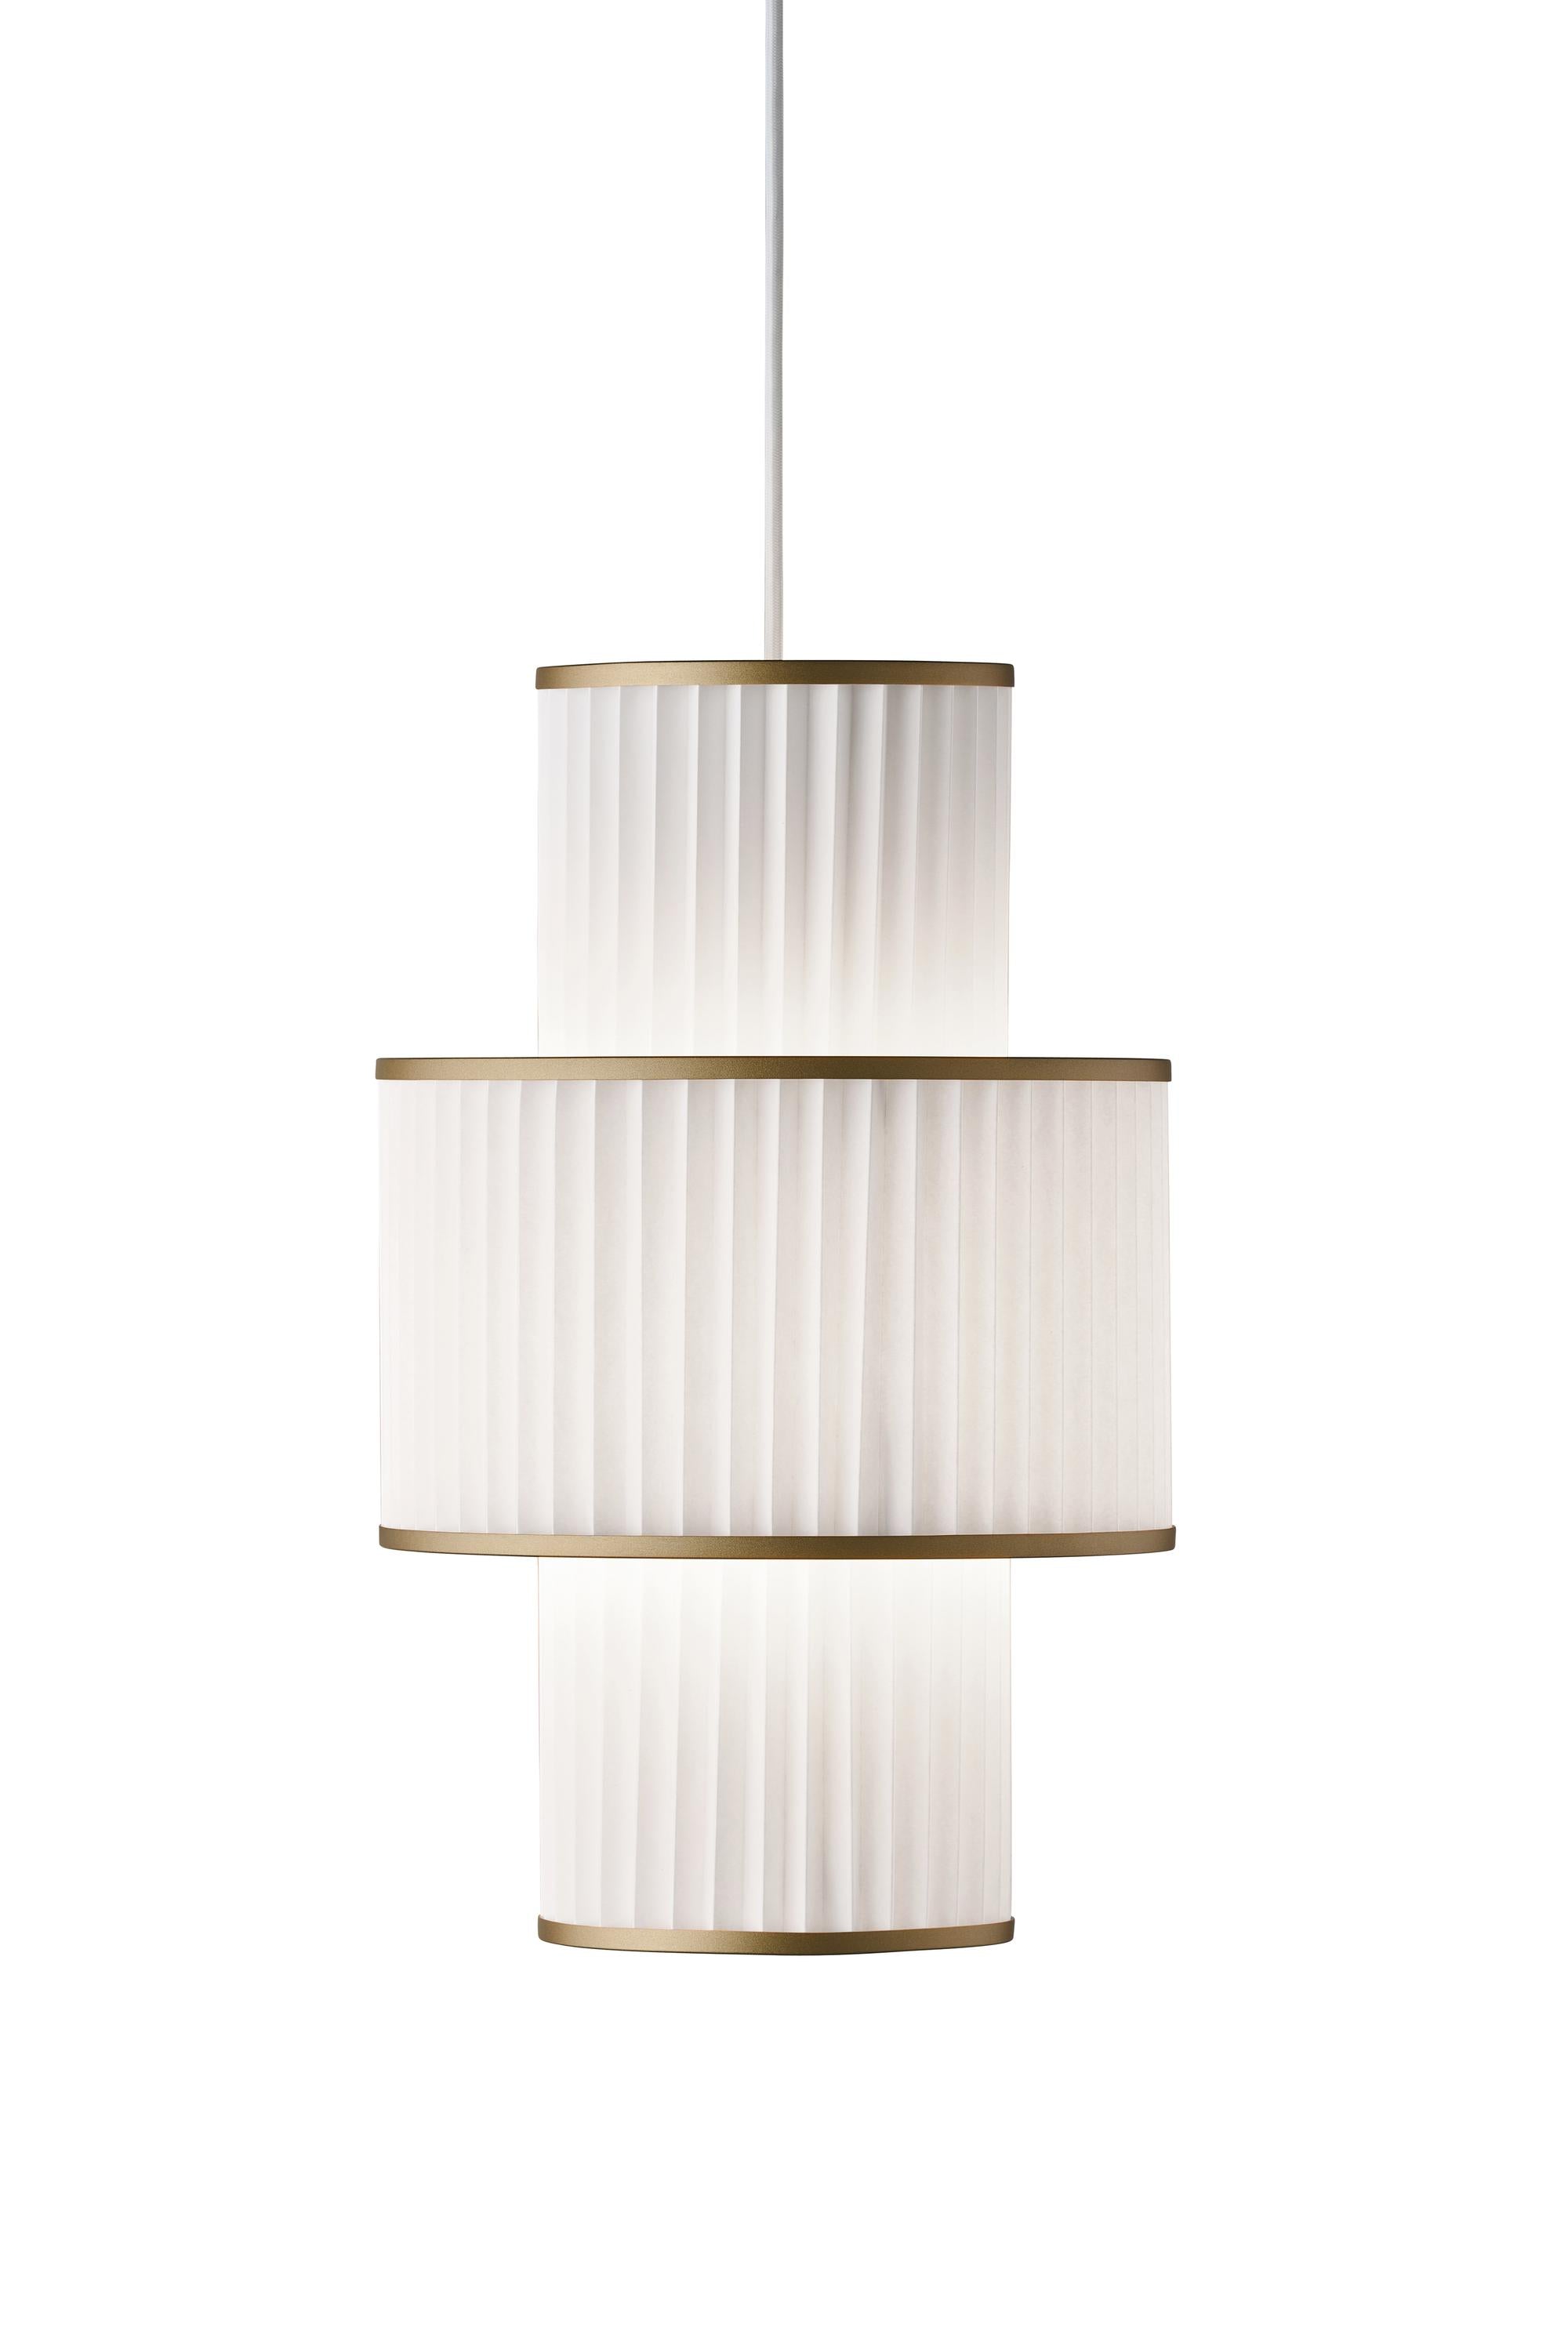 Le Klint Plivello Suspension Lamp Golden/White met 3 tinten (S M S)